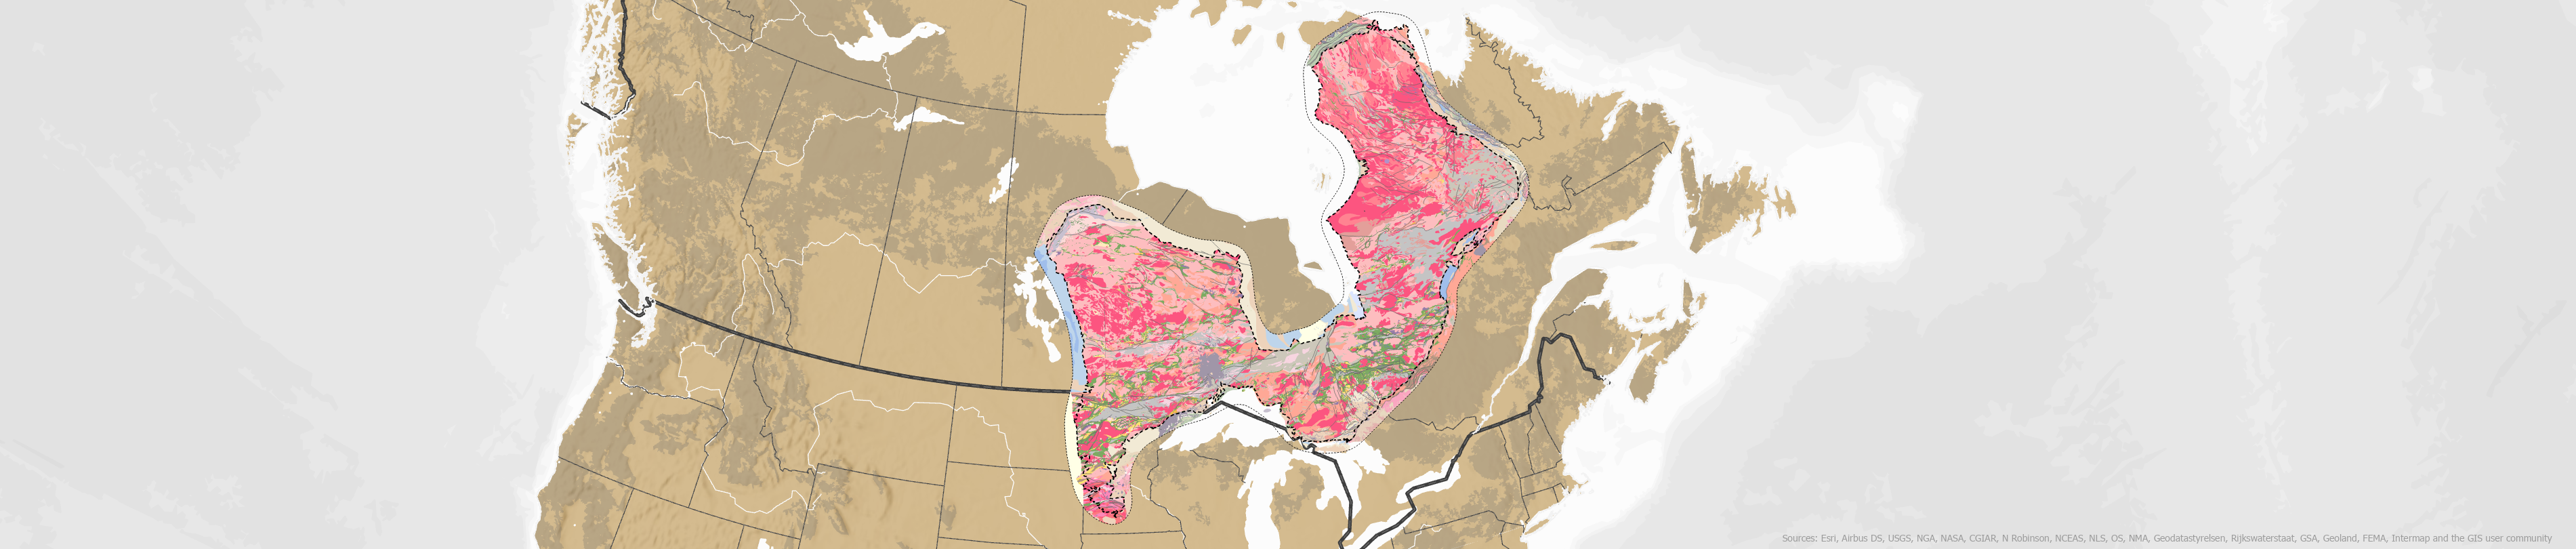 Une carte du Canada où les zones riches en métaux sont mises en évidence.